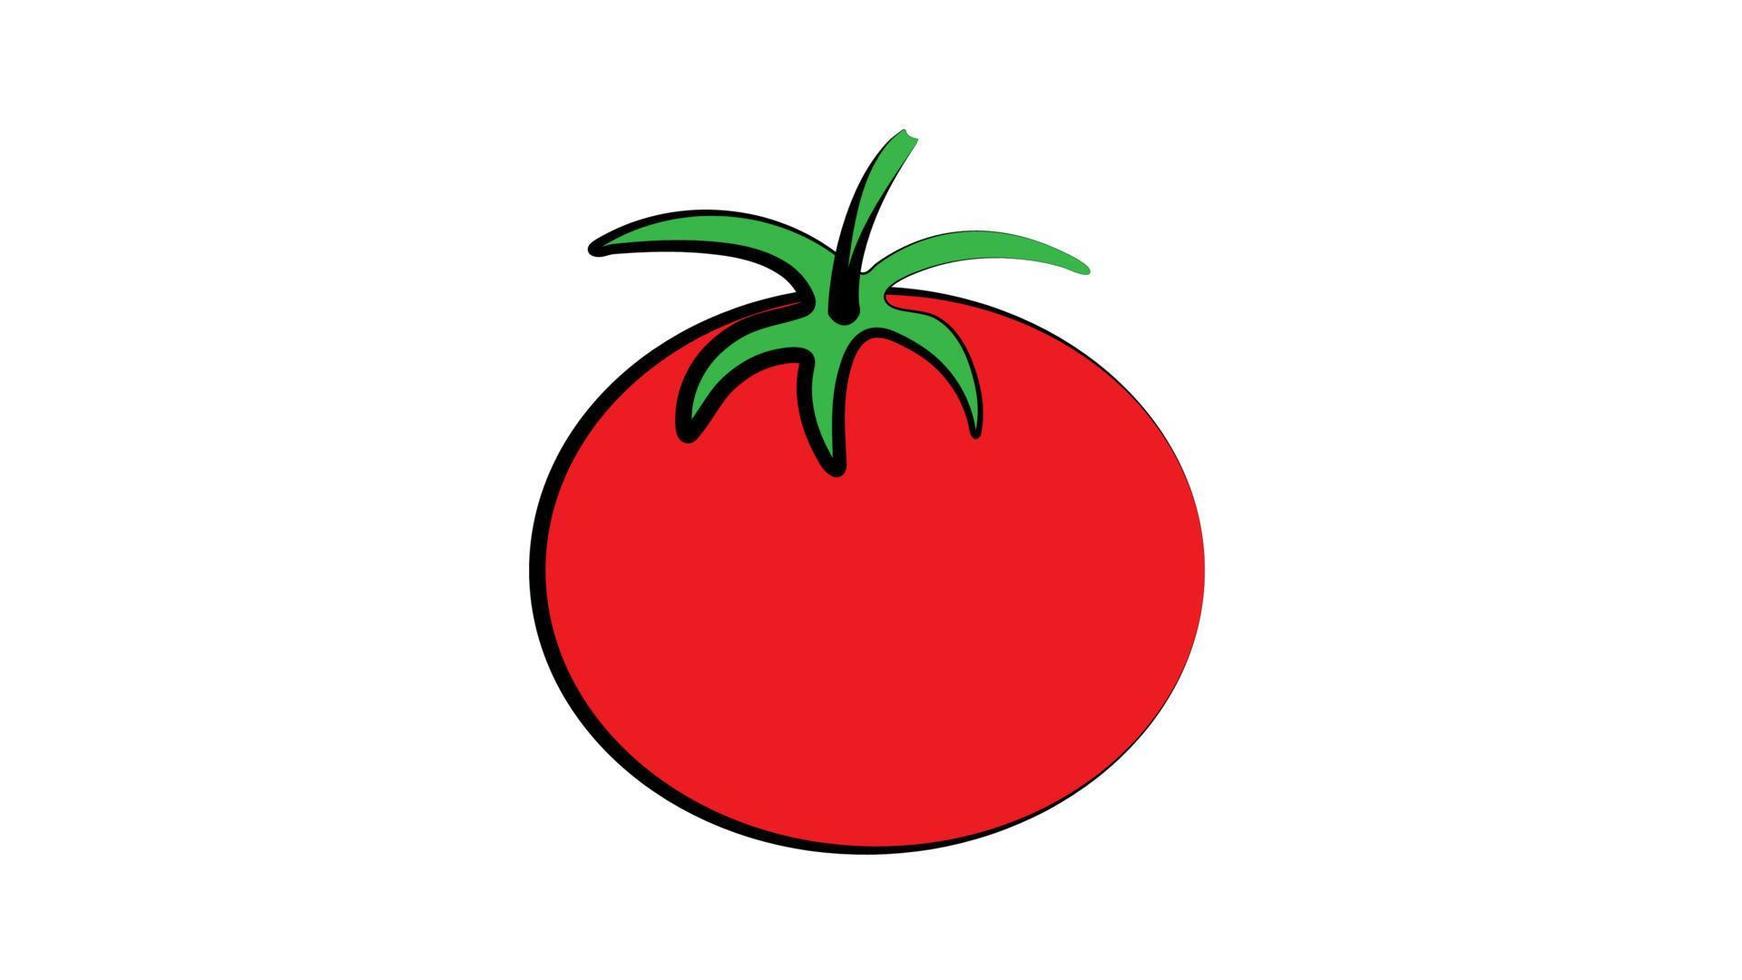 tomate em um fundo branco, ilustração vetorial. tomate apetitoso, salada fresca, comida saudável. tomate suculento para perda de peso, vegetal brilhante e redondo vetor